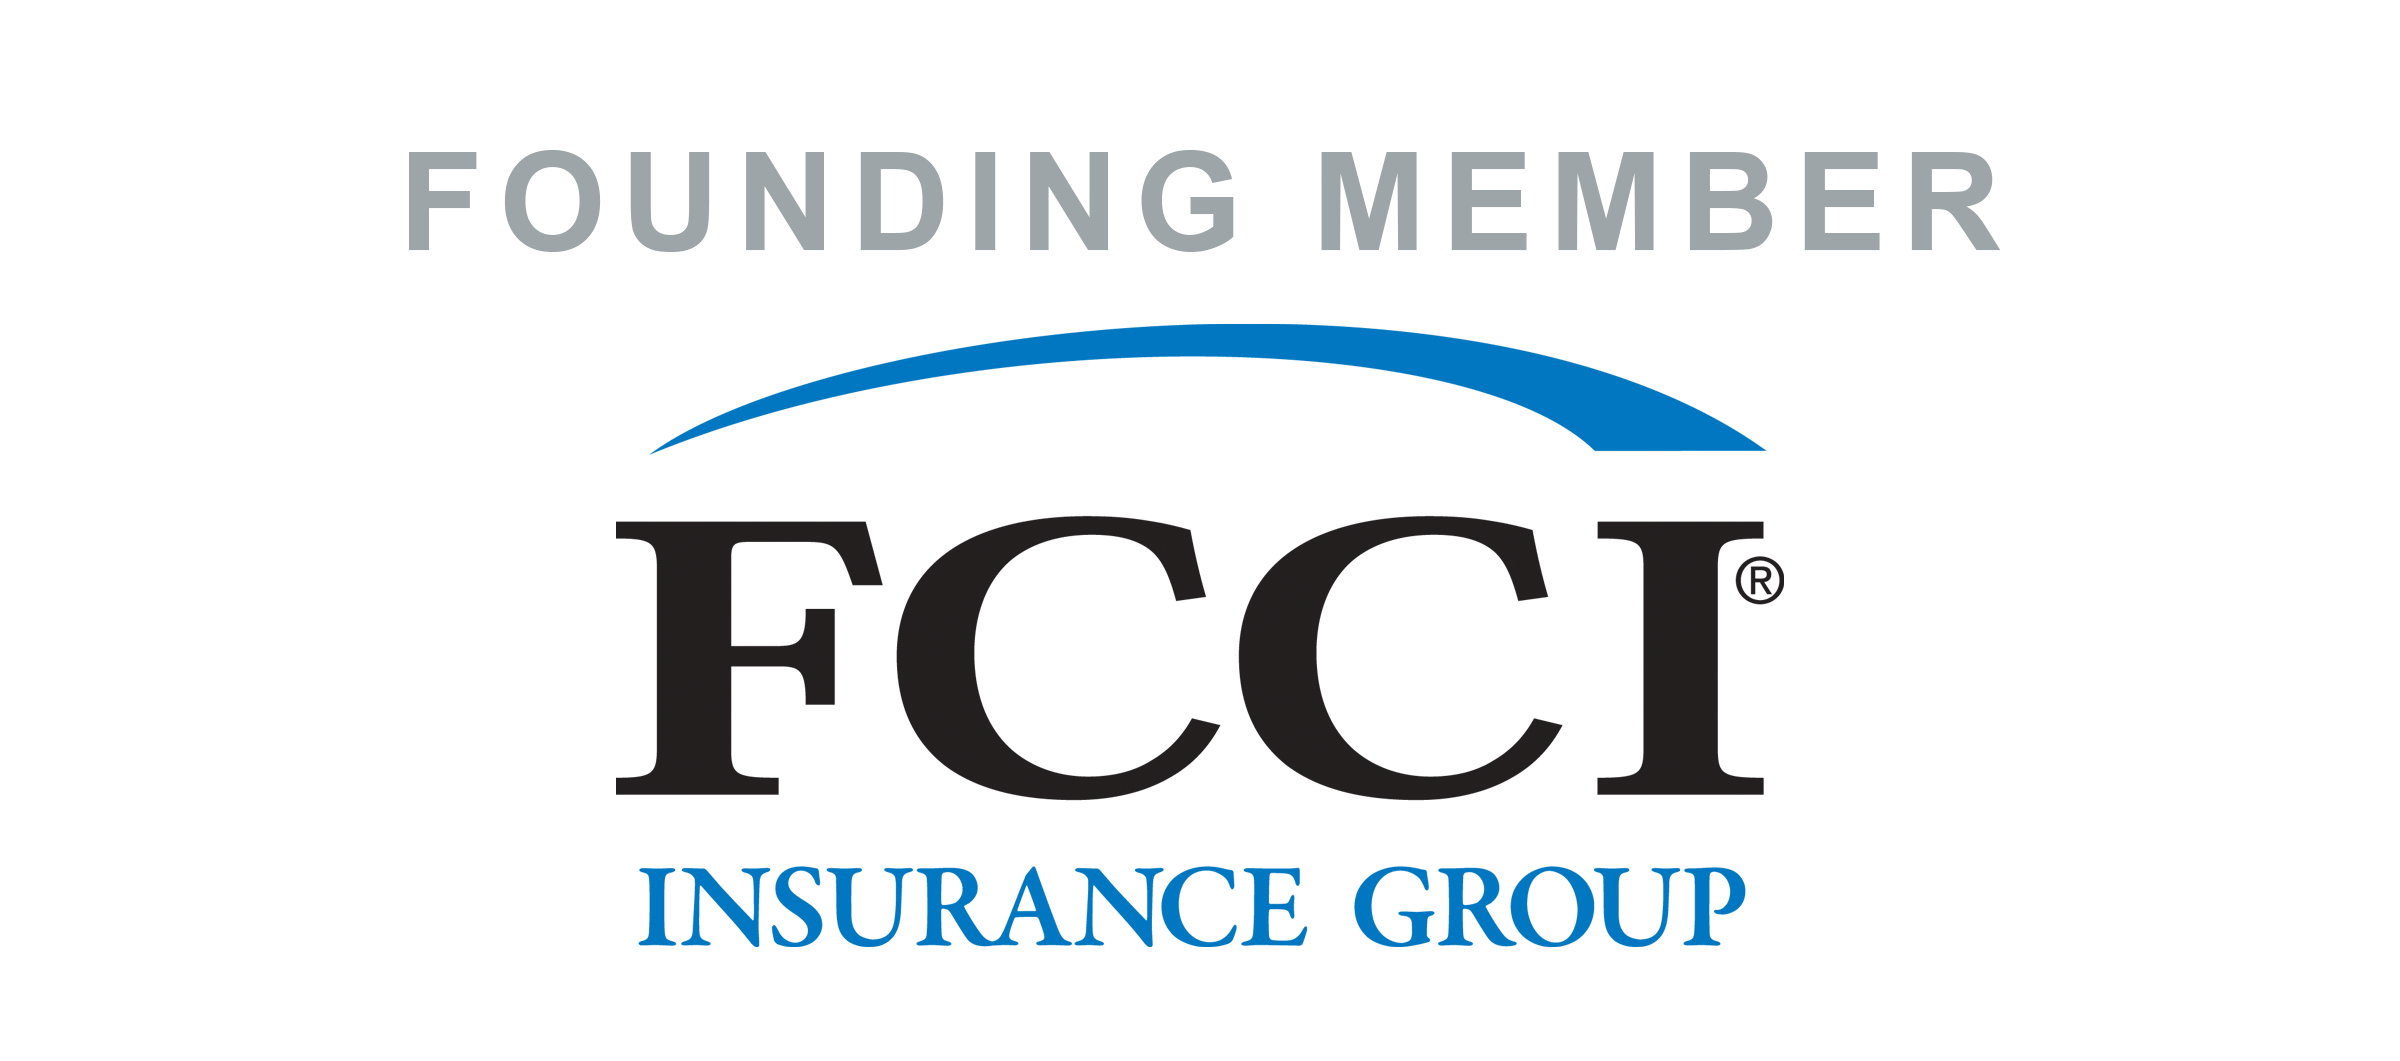 FCCI Insurance